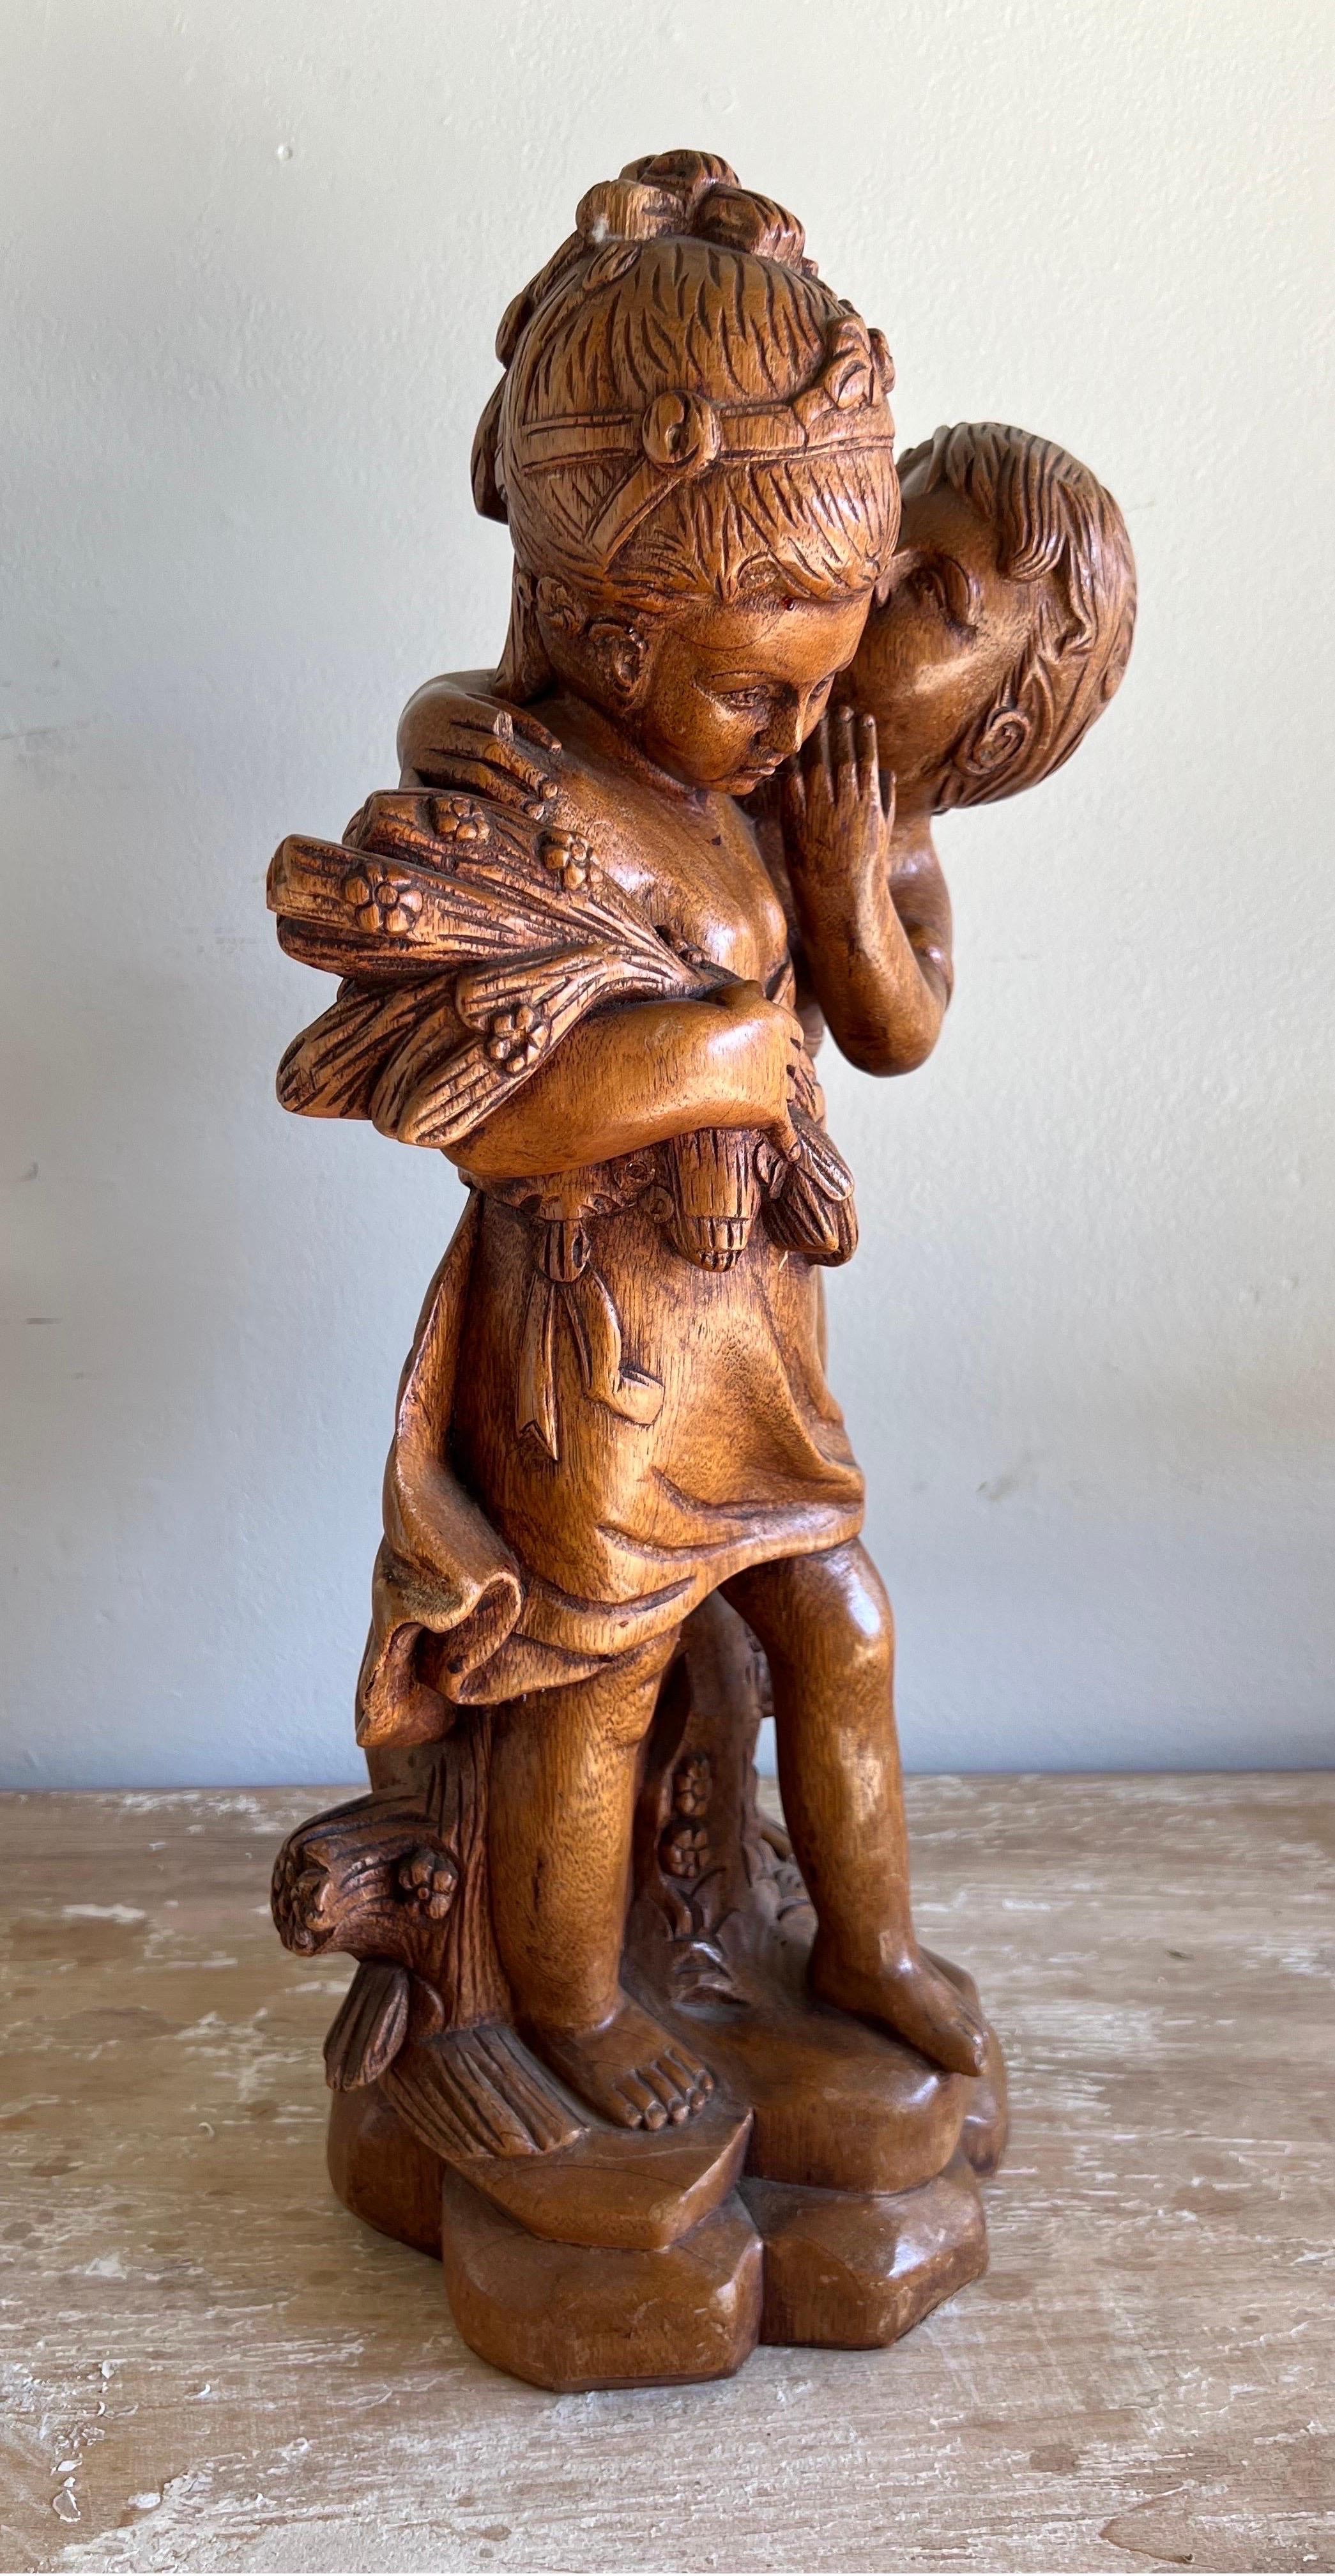 Die figurative Holzschnitzerei eines Jungen, der einem Mädchen ins Ohr flüstert, während das Mädchen einen Blumenstrauß in der Hand hält, ist aus Nussbaumholz gefertigt und fängt wahrscheinlich einen Moment der Unschuld und Romantik ein.  Die